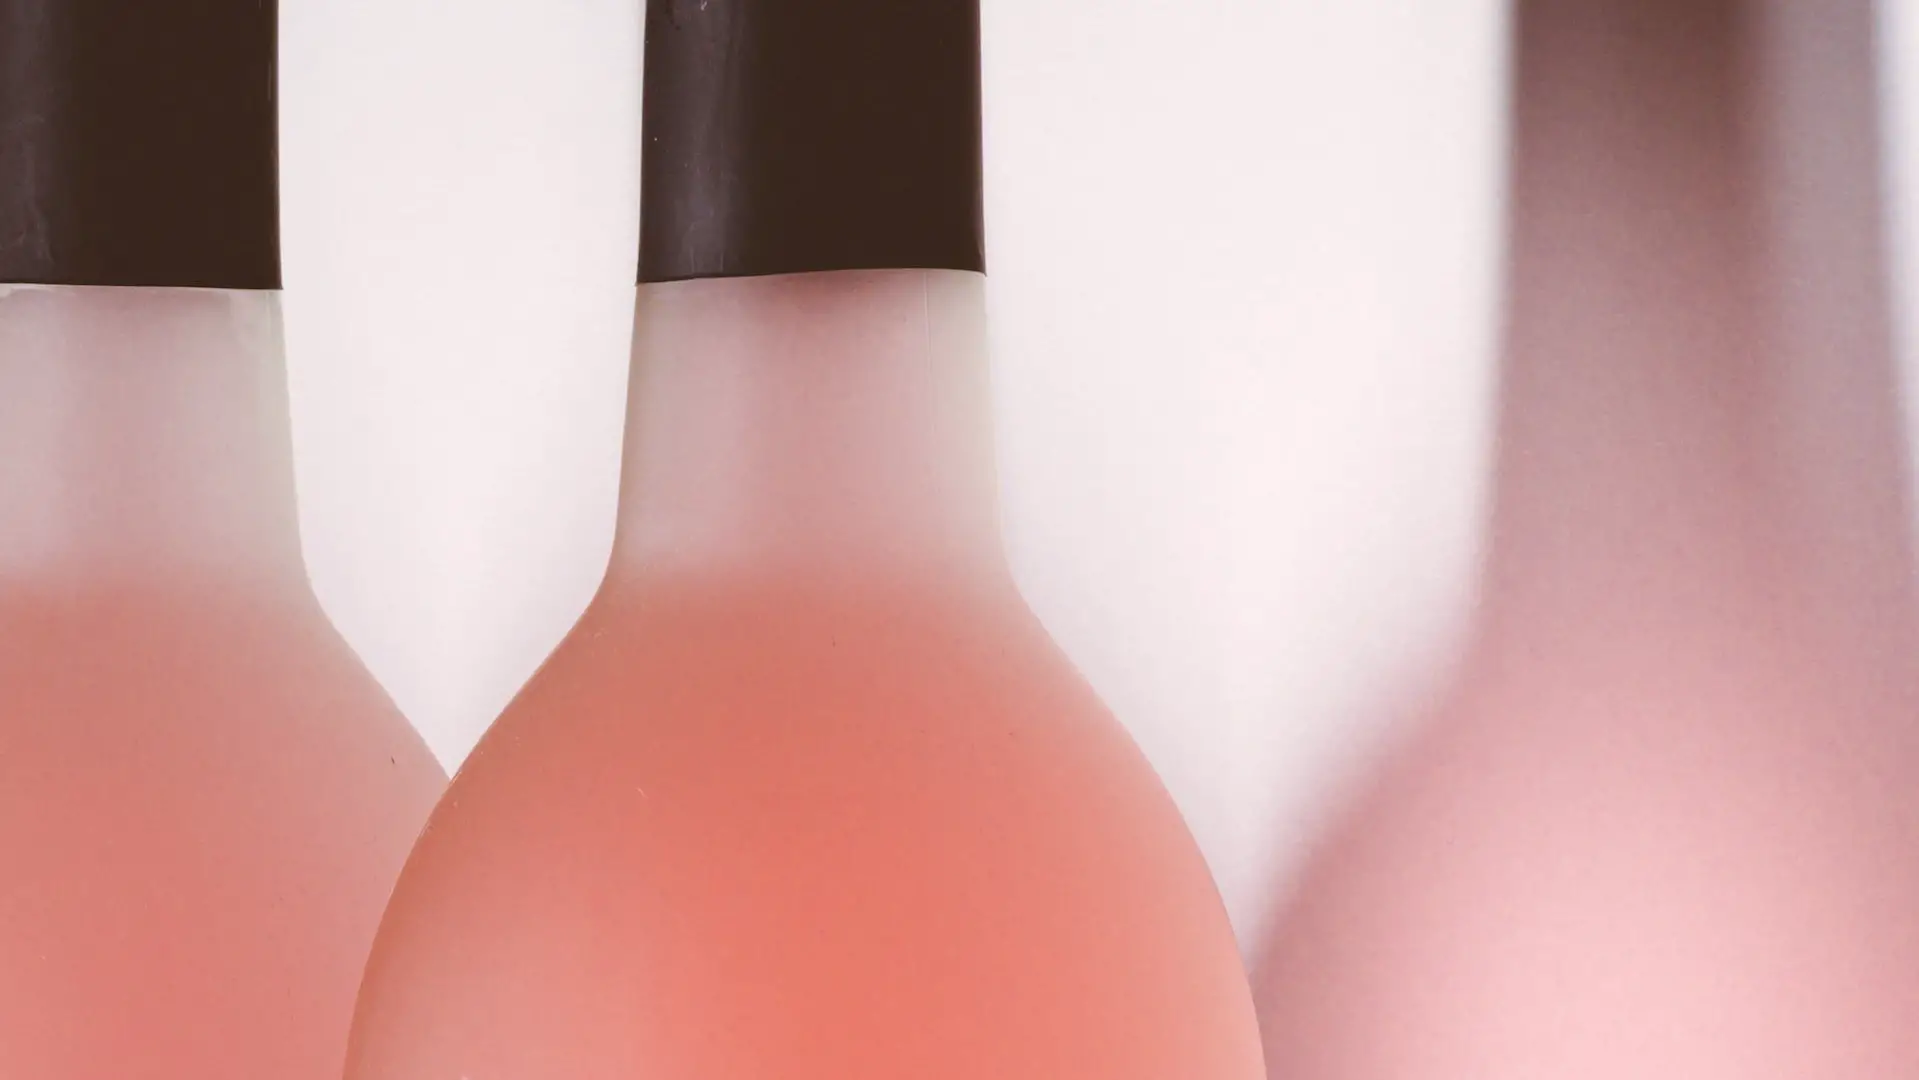 sparkling rose wine - rose wine bottles